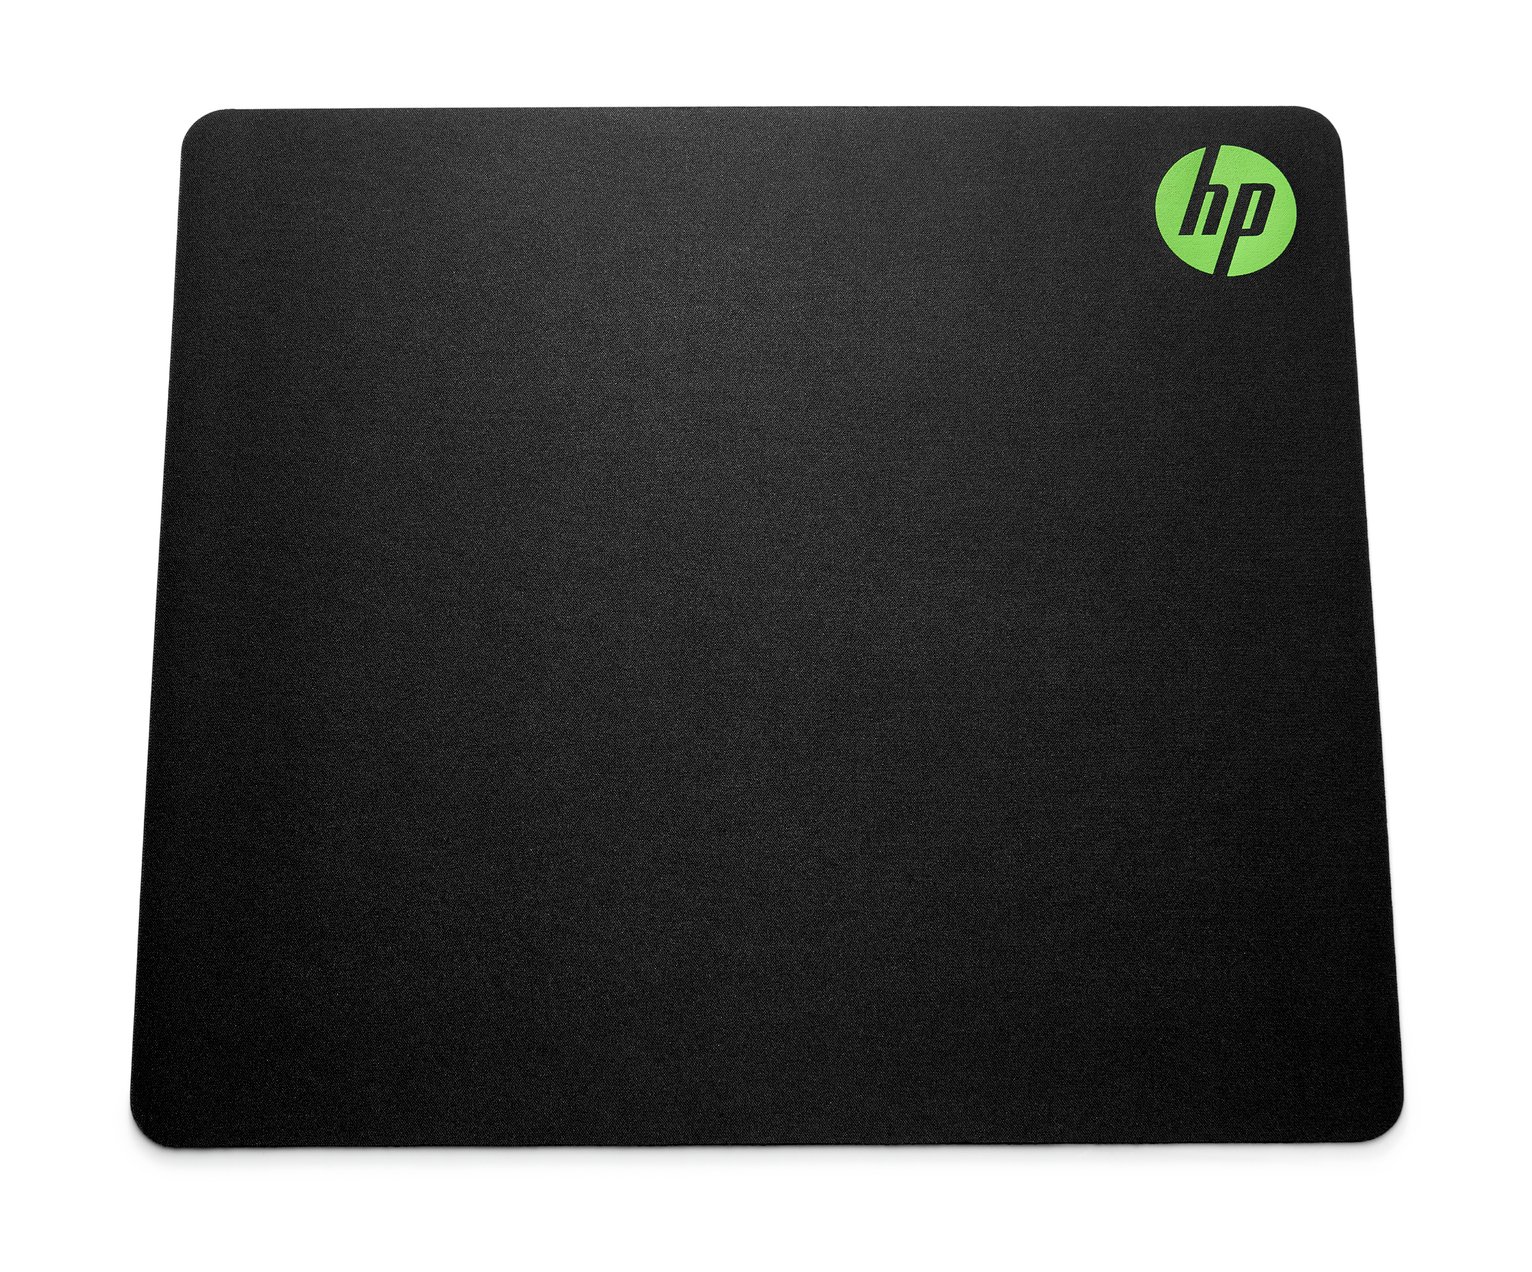 HP Pavilion 300 MS Mouse Pad - Black